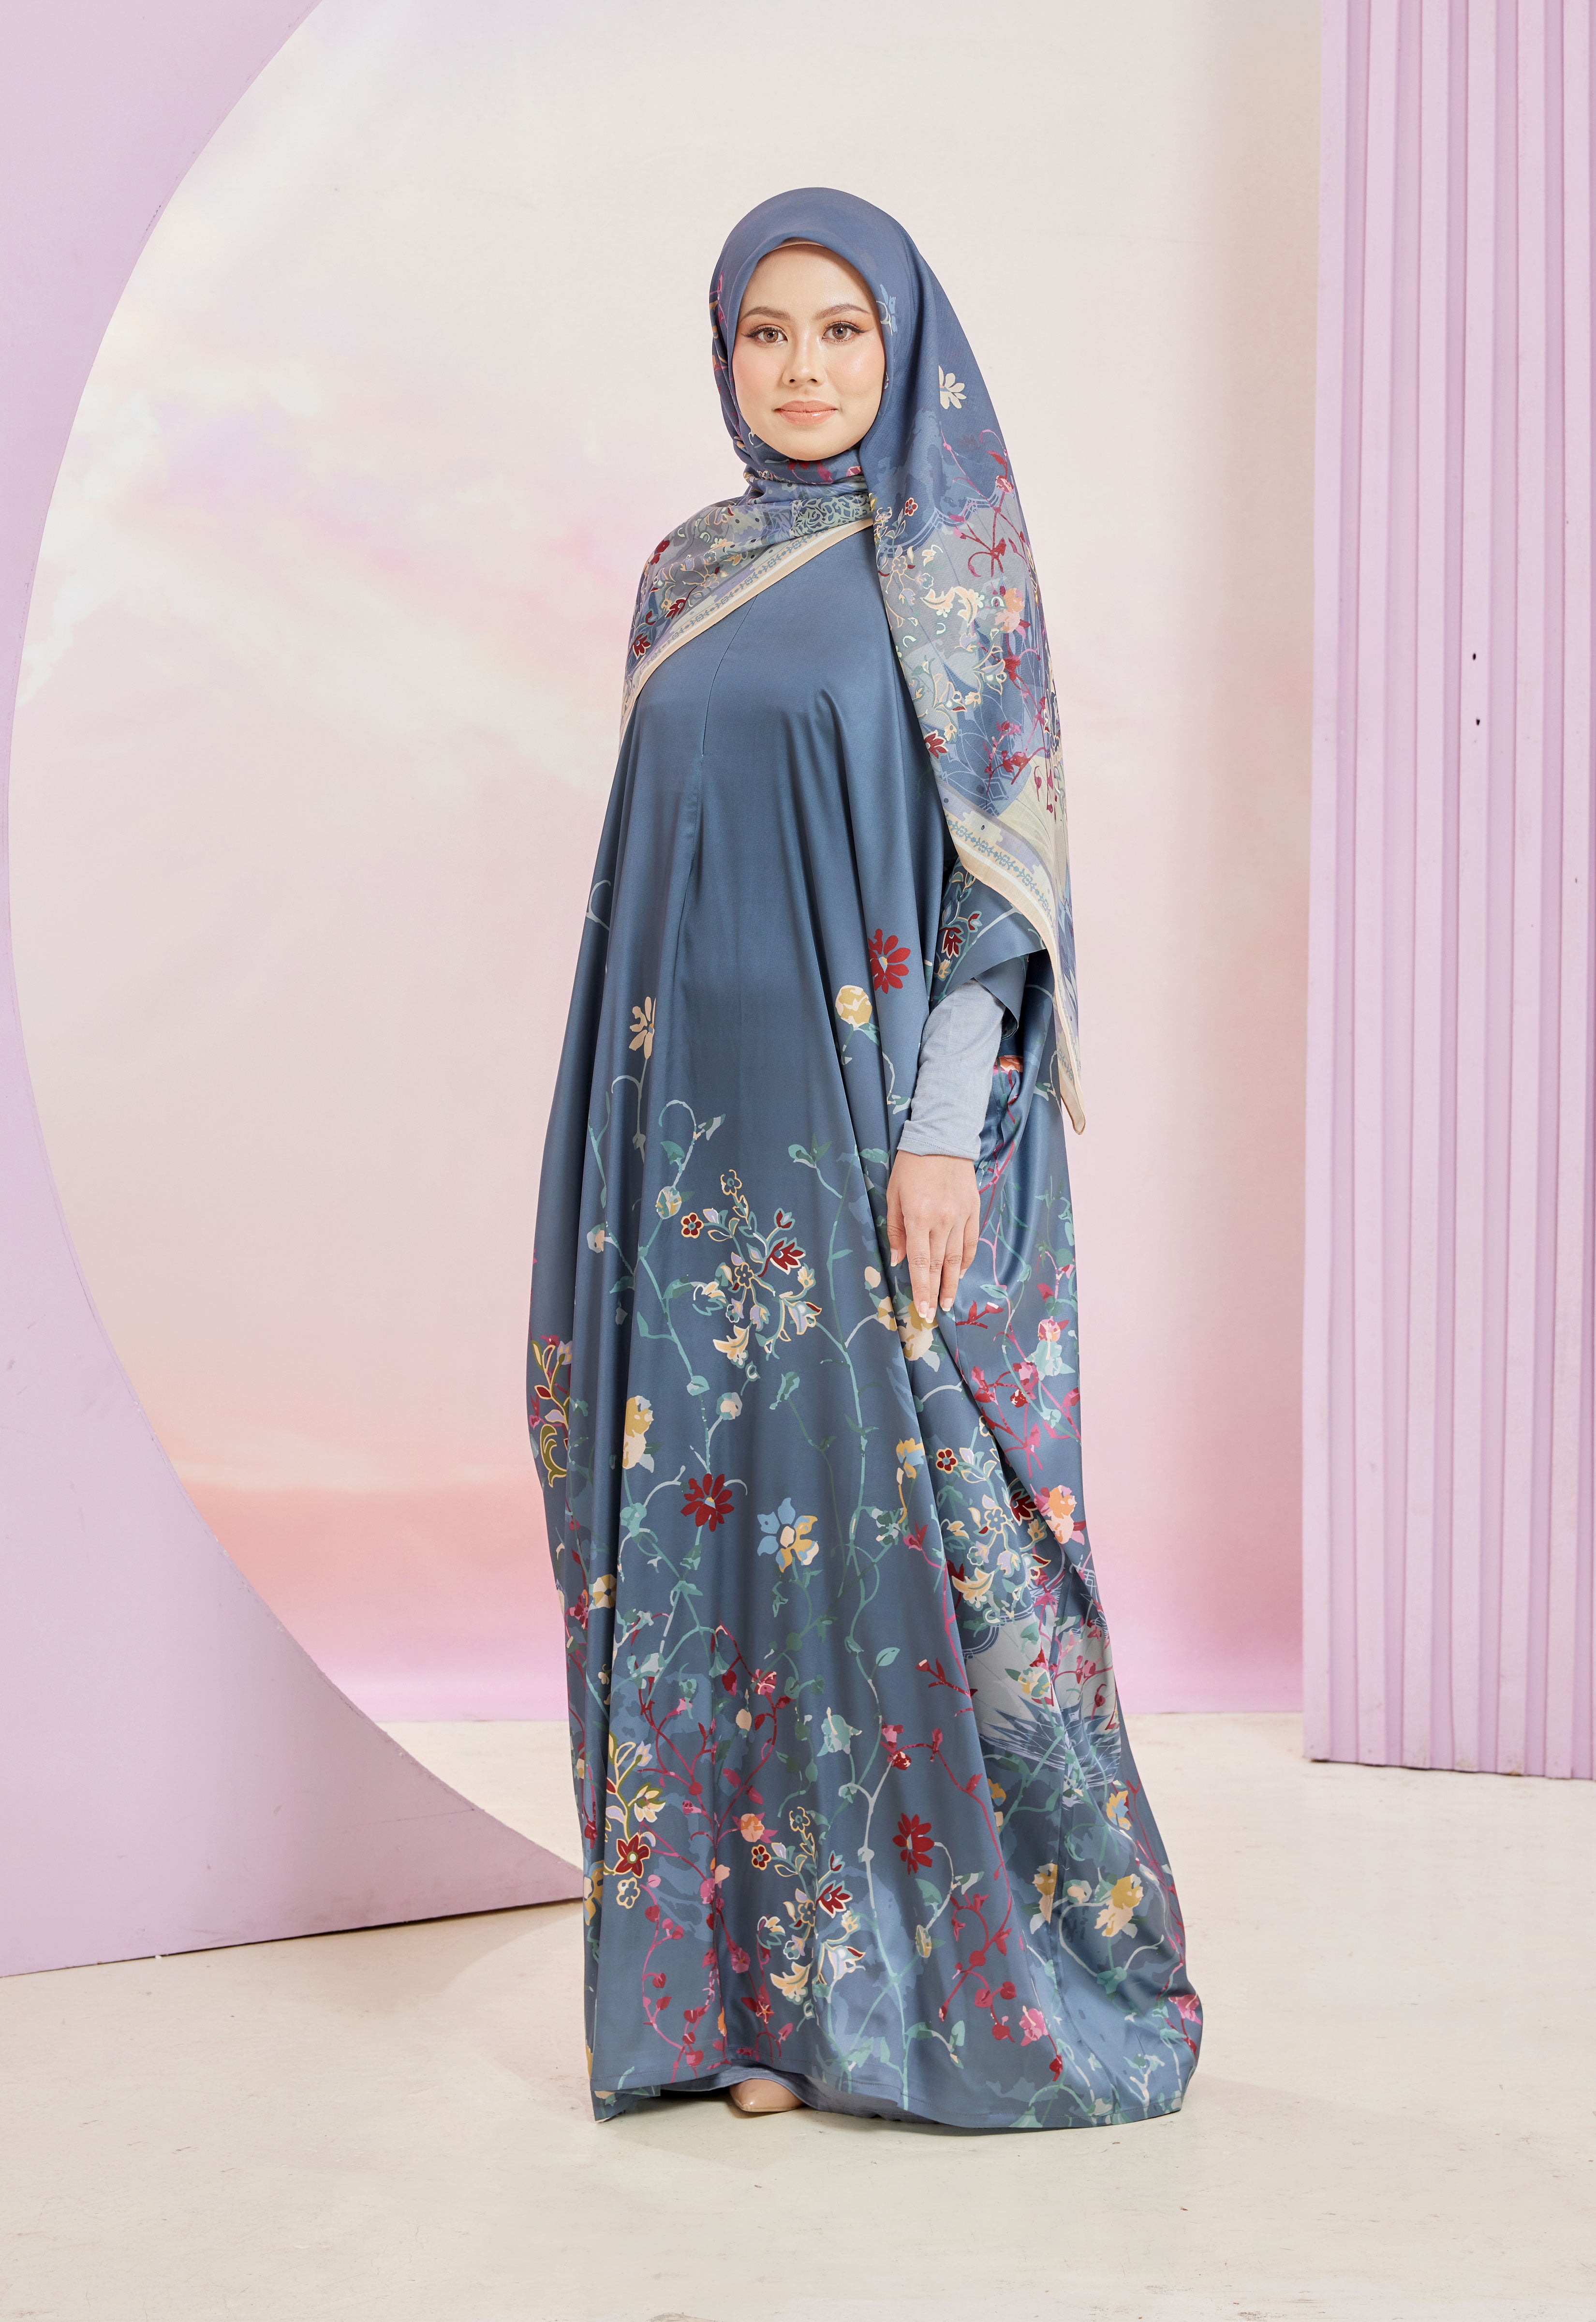 Sakinah Printed Abaya - Hijab Blog